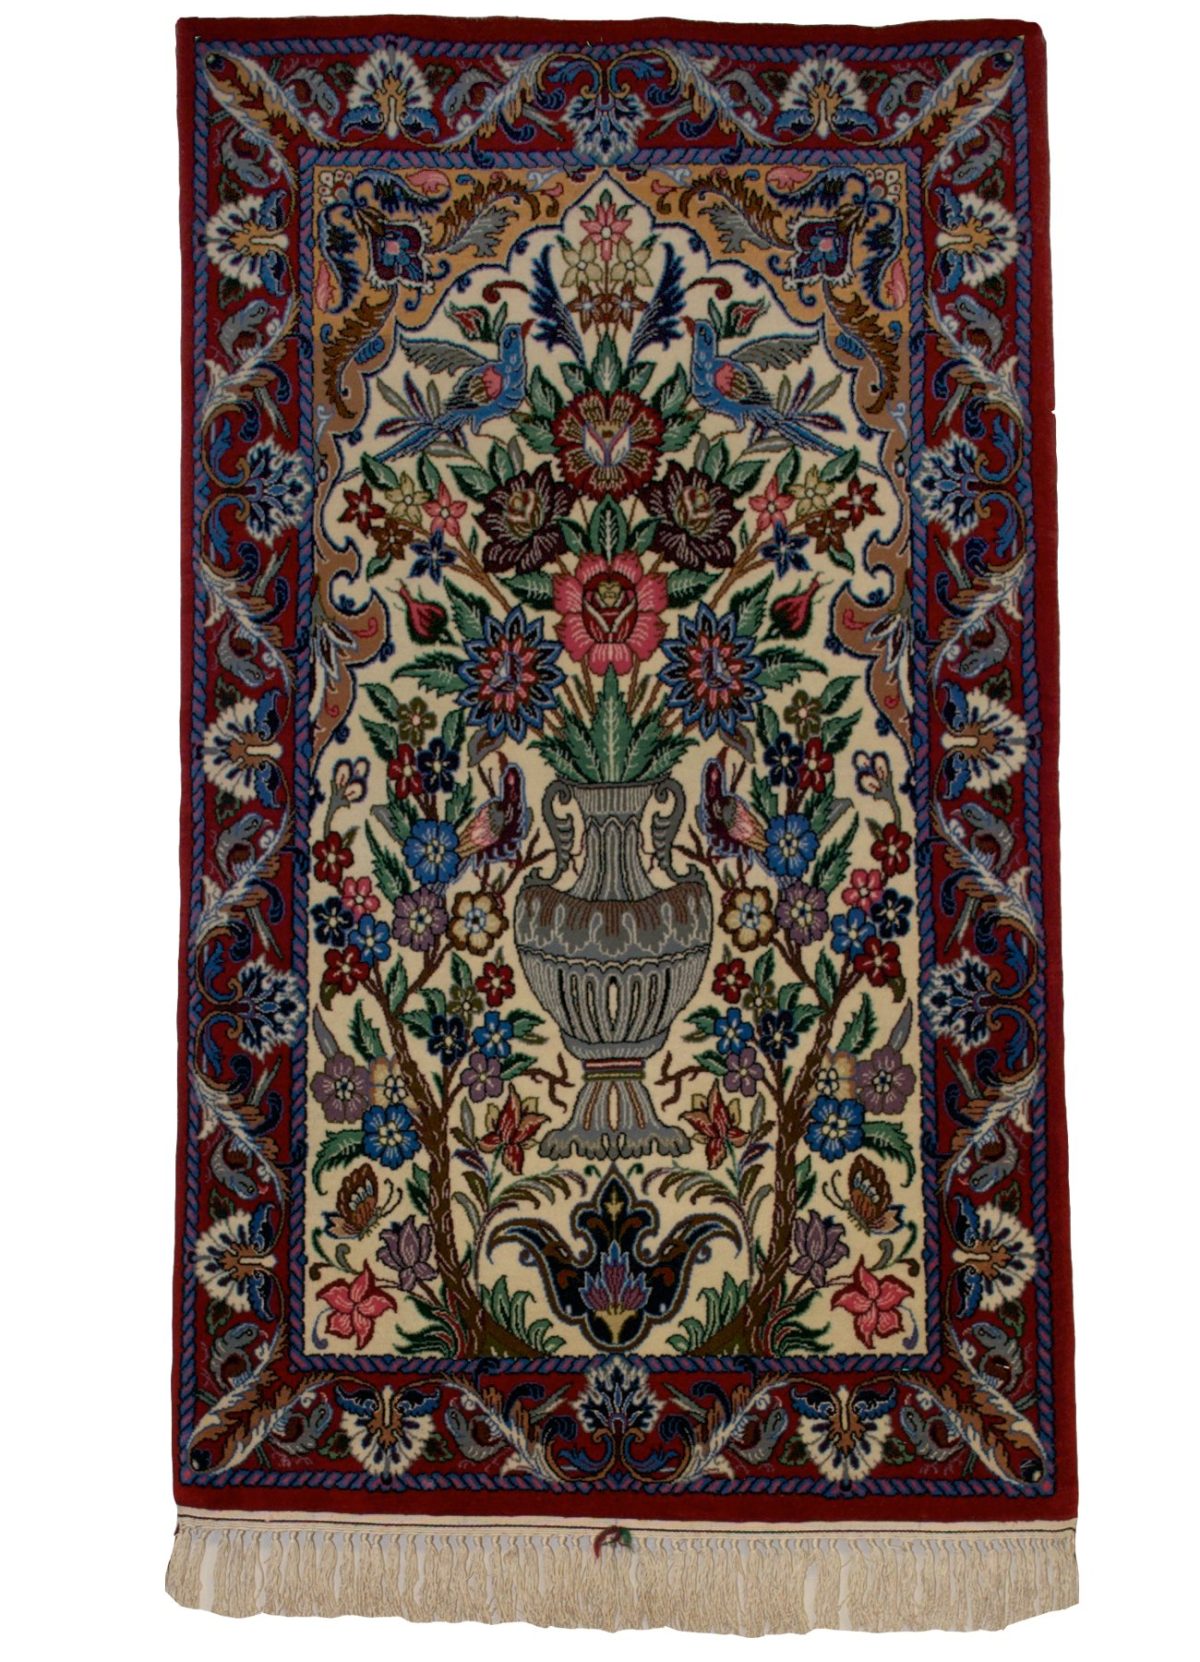 Persian Esfahan 2' 2" x 3' 9" - Shabahang Royal Carpet